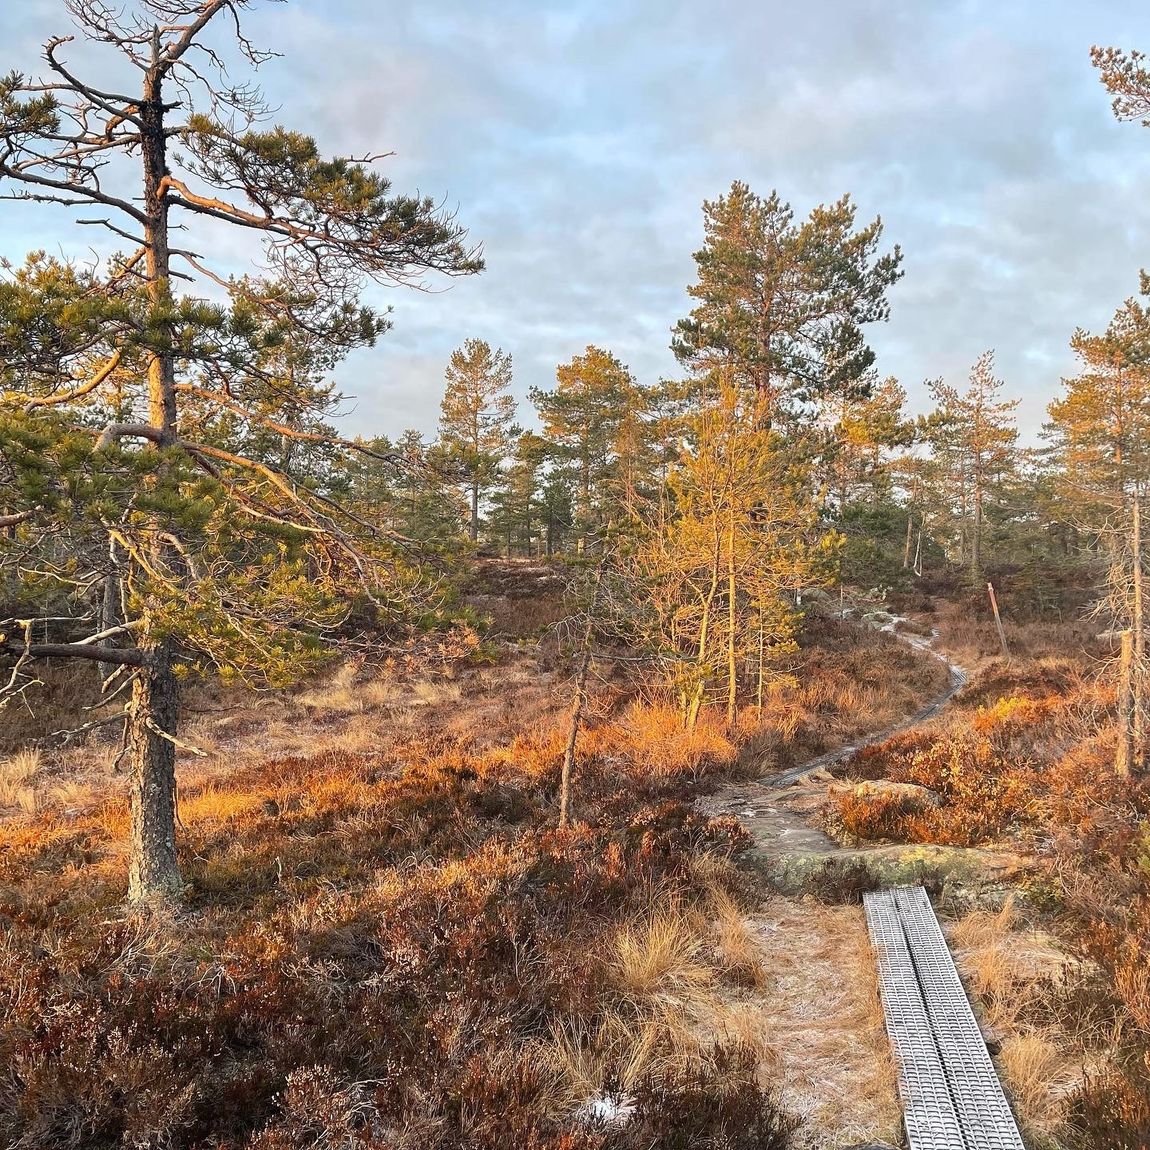 Traumhafte Idylle mitten im Wald in Schweden